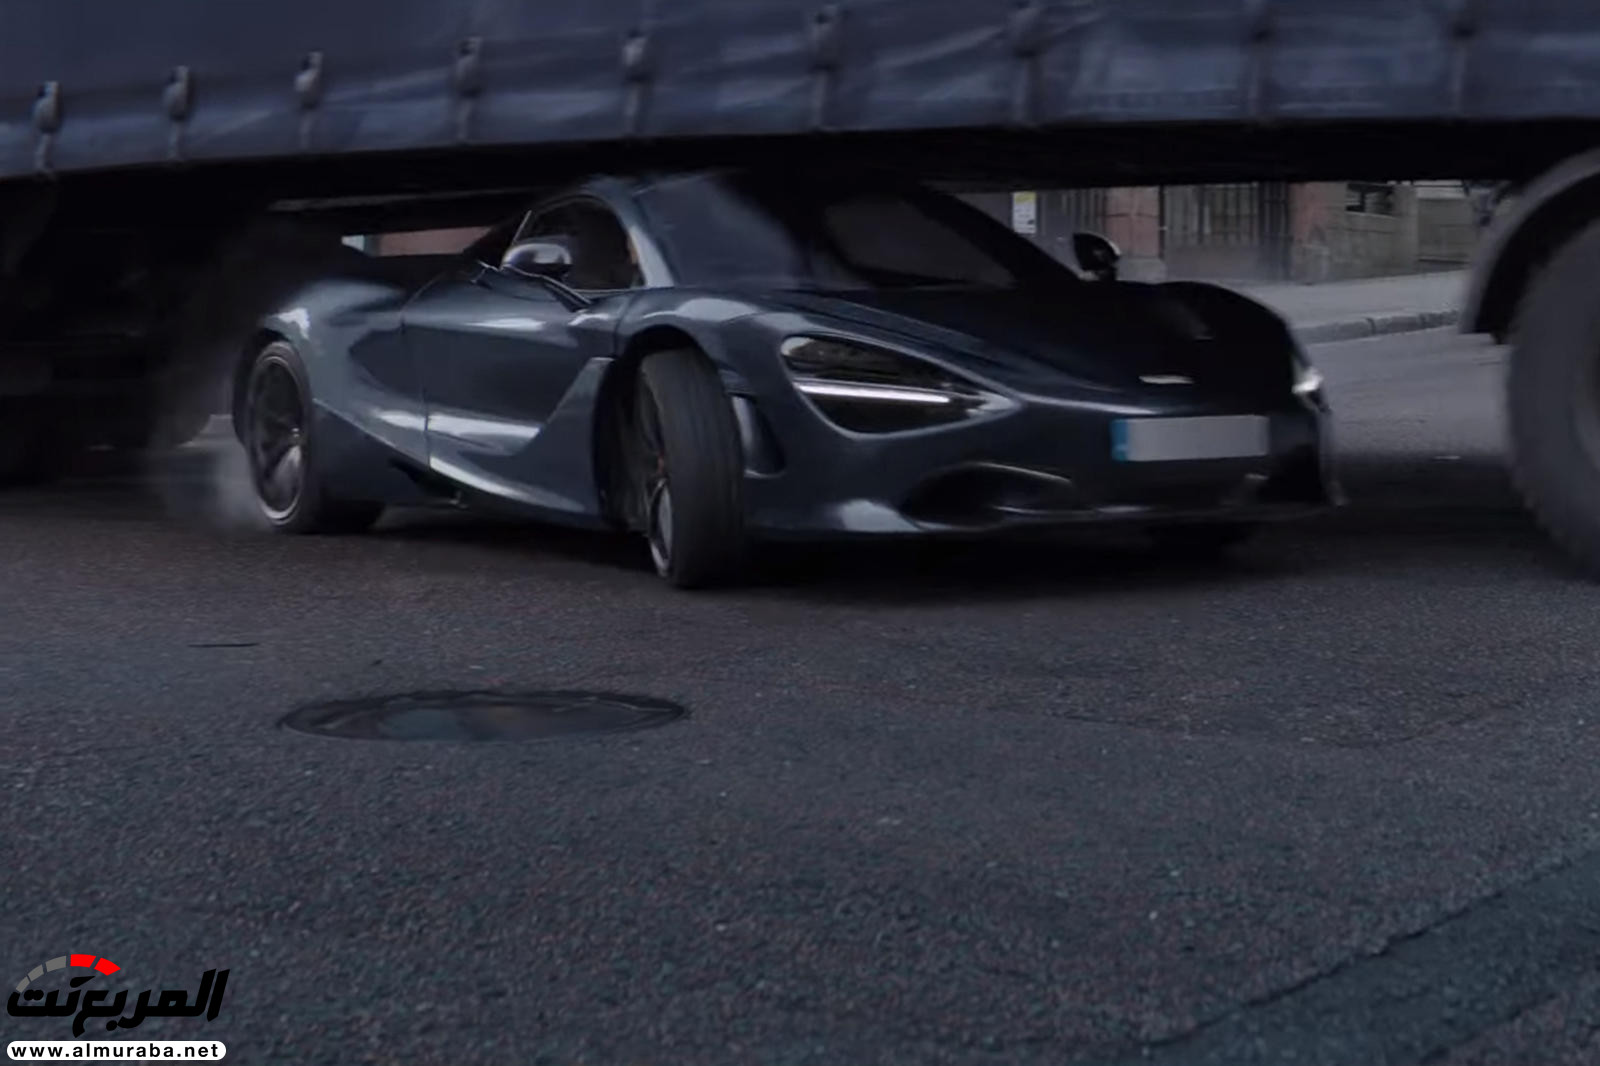 "بالفيديو والصور" لن تصدق مشاهد الأكشن مع السيارات في فيلم Fast & Furious: Hobbs & Shaw 28